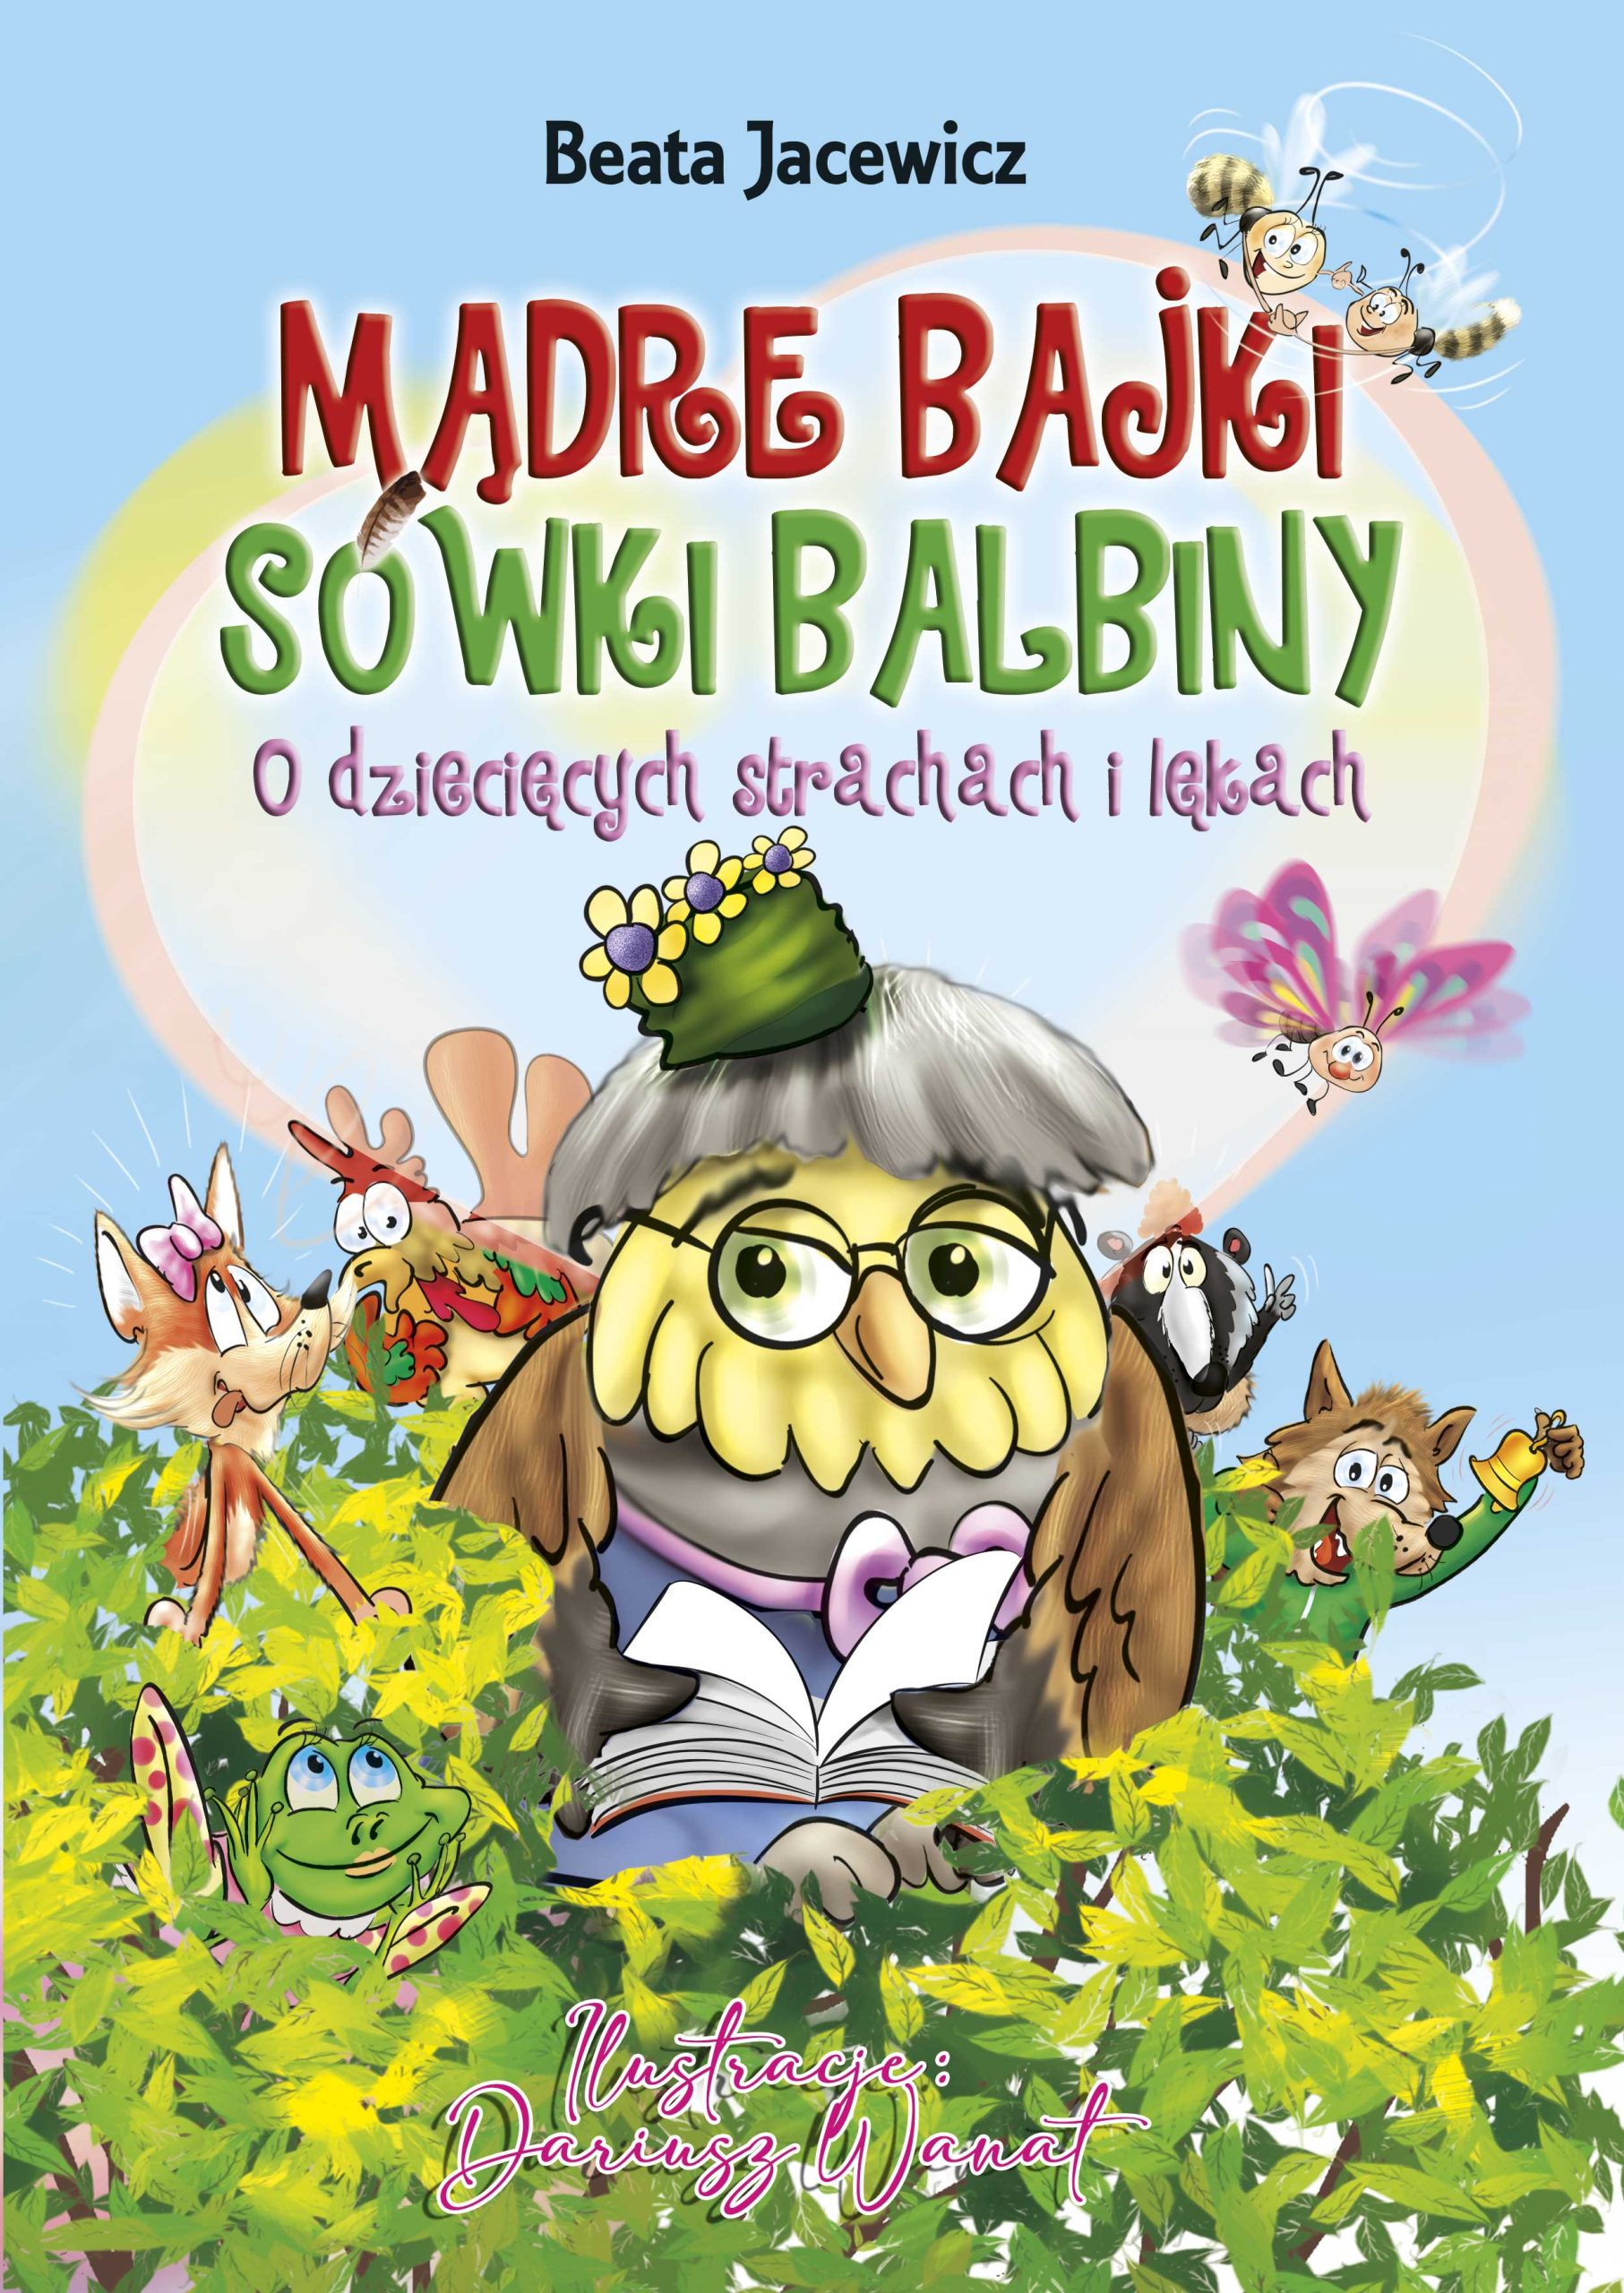 Mądre bajki sówki Balbiny - książka pomagająca oswoić lęki i strachy dziecka